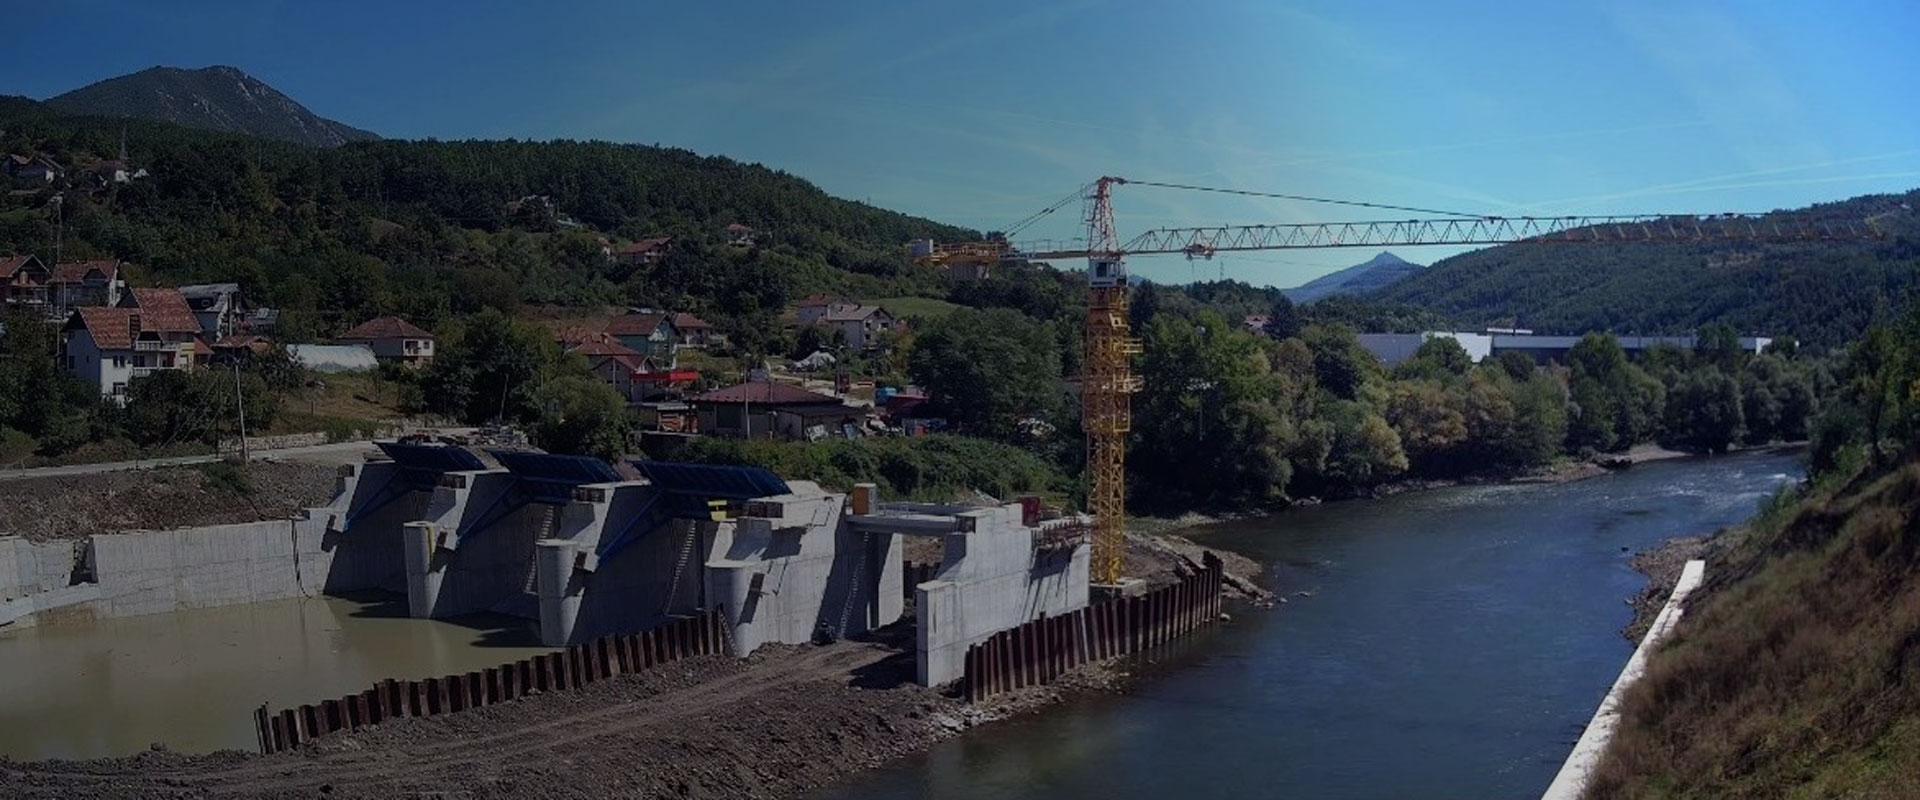 Wasserkraftwerk in Serbien